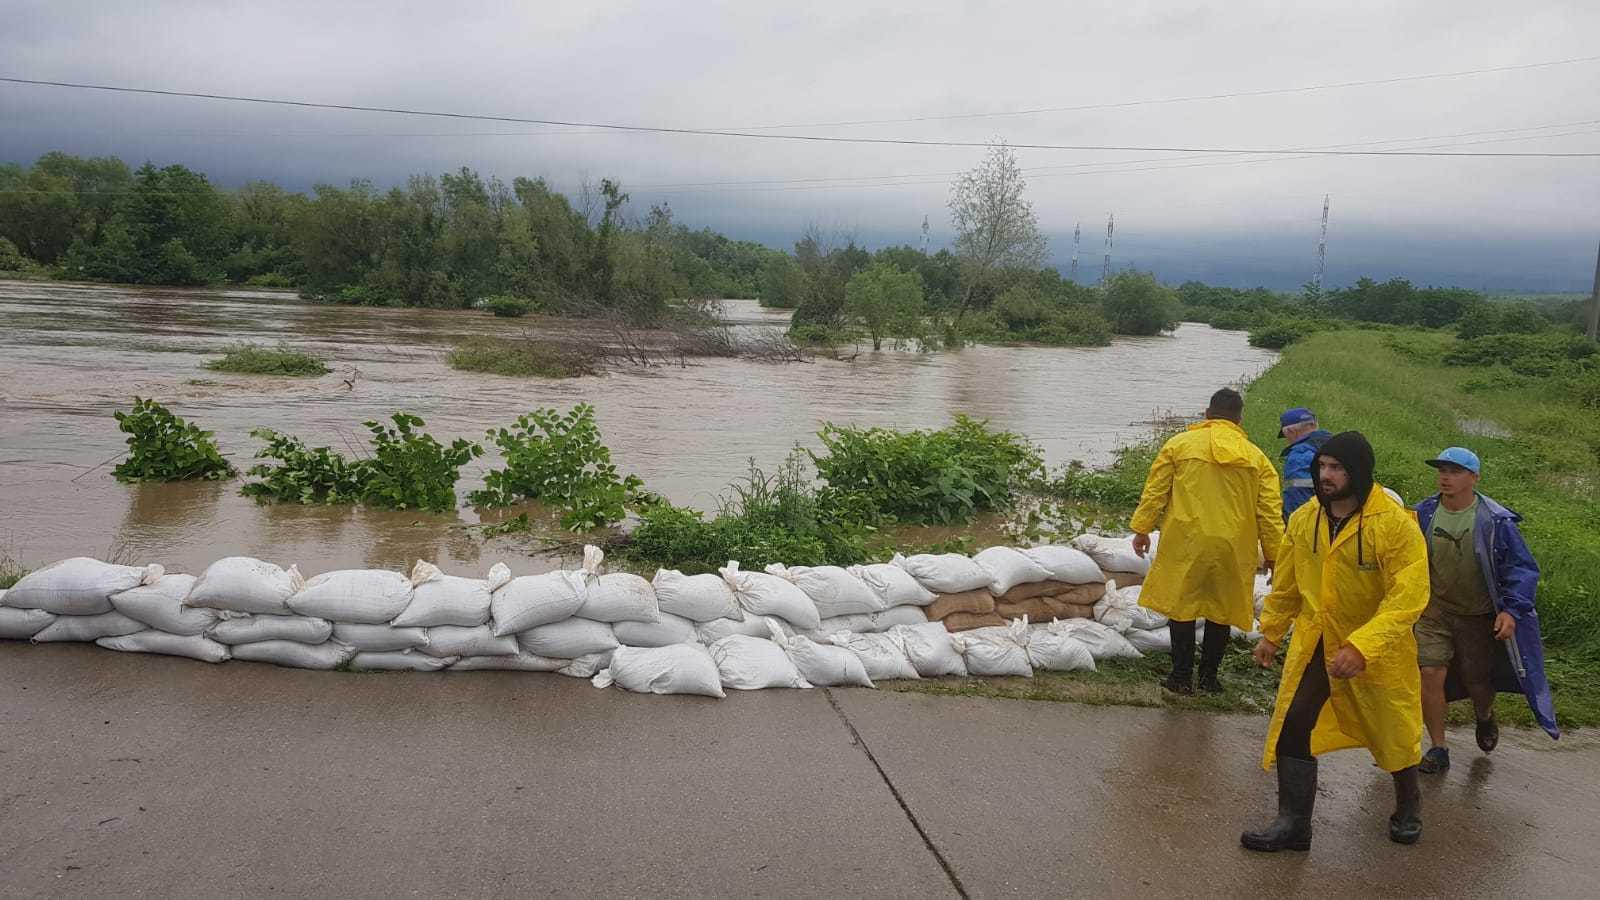 Potop în România: ANM a emis un nou Cod roşu de ploi. A fost transmis mesaj Ro-Alert către populaţie